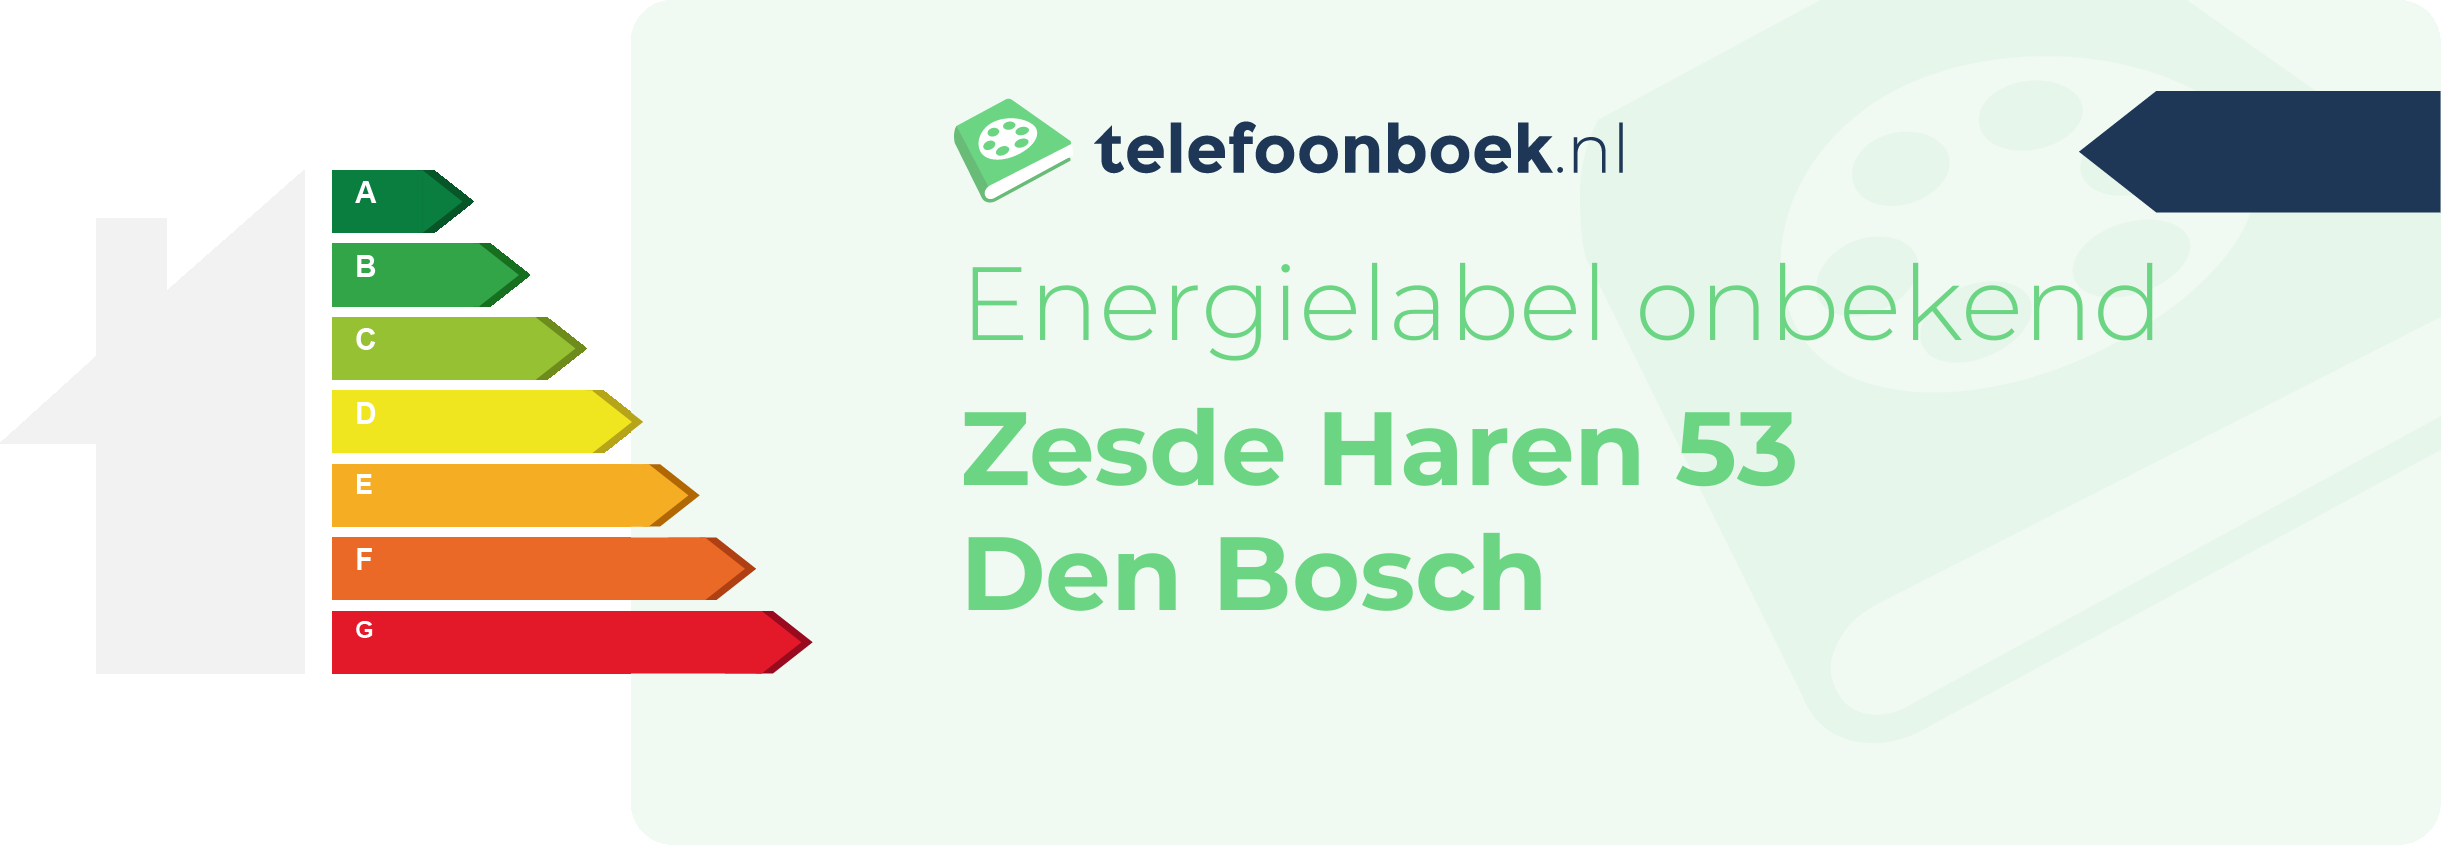 Energielabel Zesde Haren 53 Den Bosch